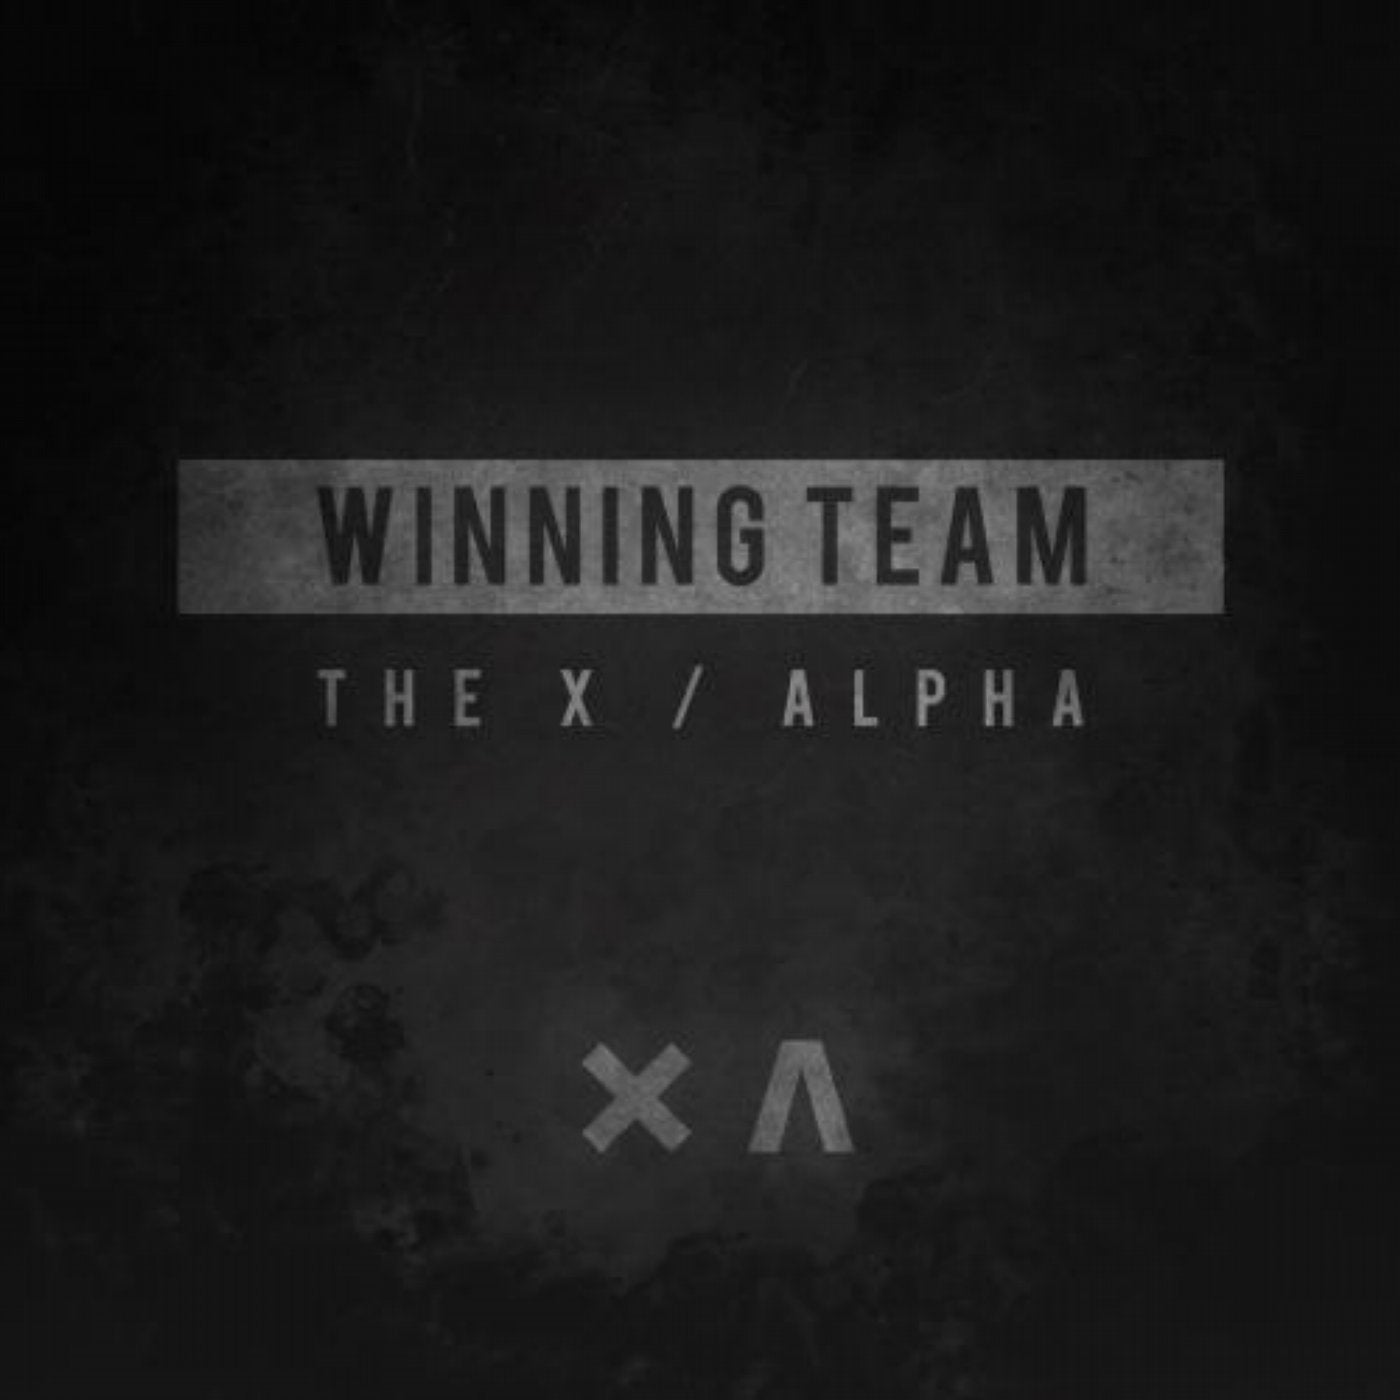 The X / Alpha